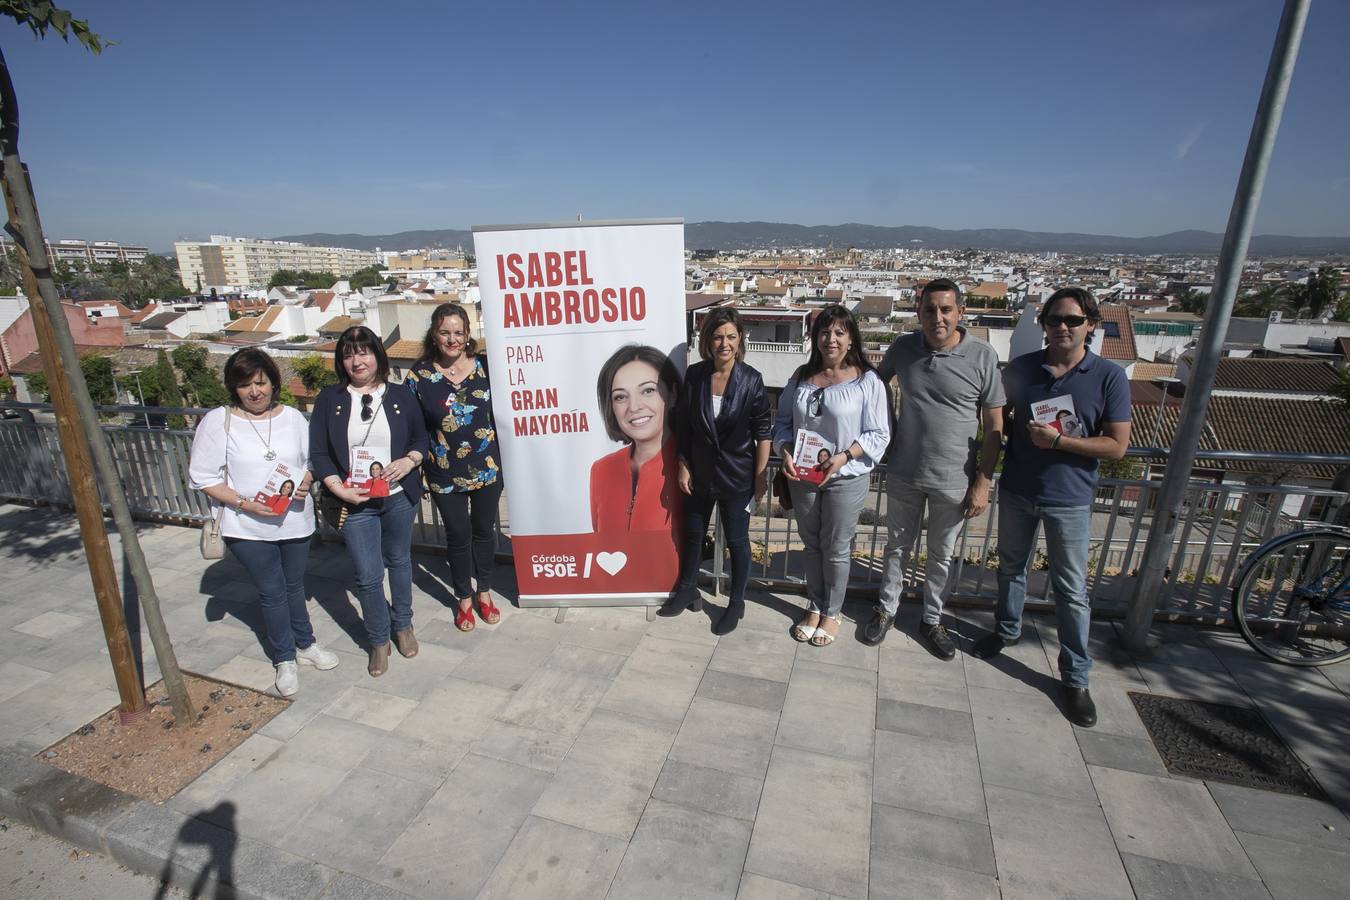 Las mejores imágenes de la séptima jornada de campaña en Córdoba